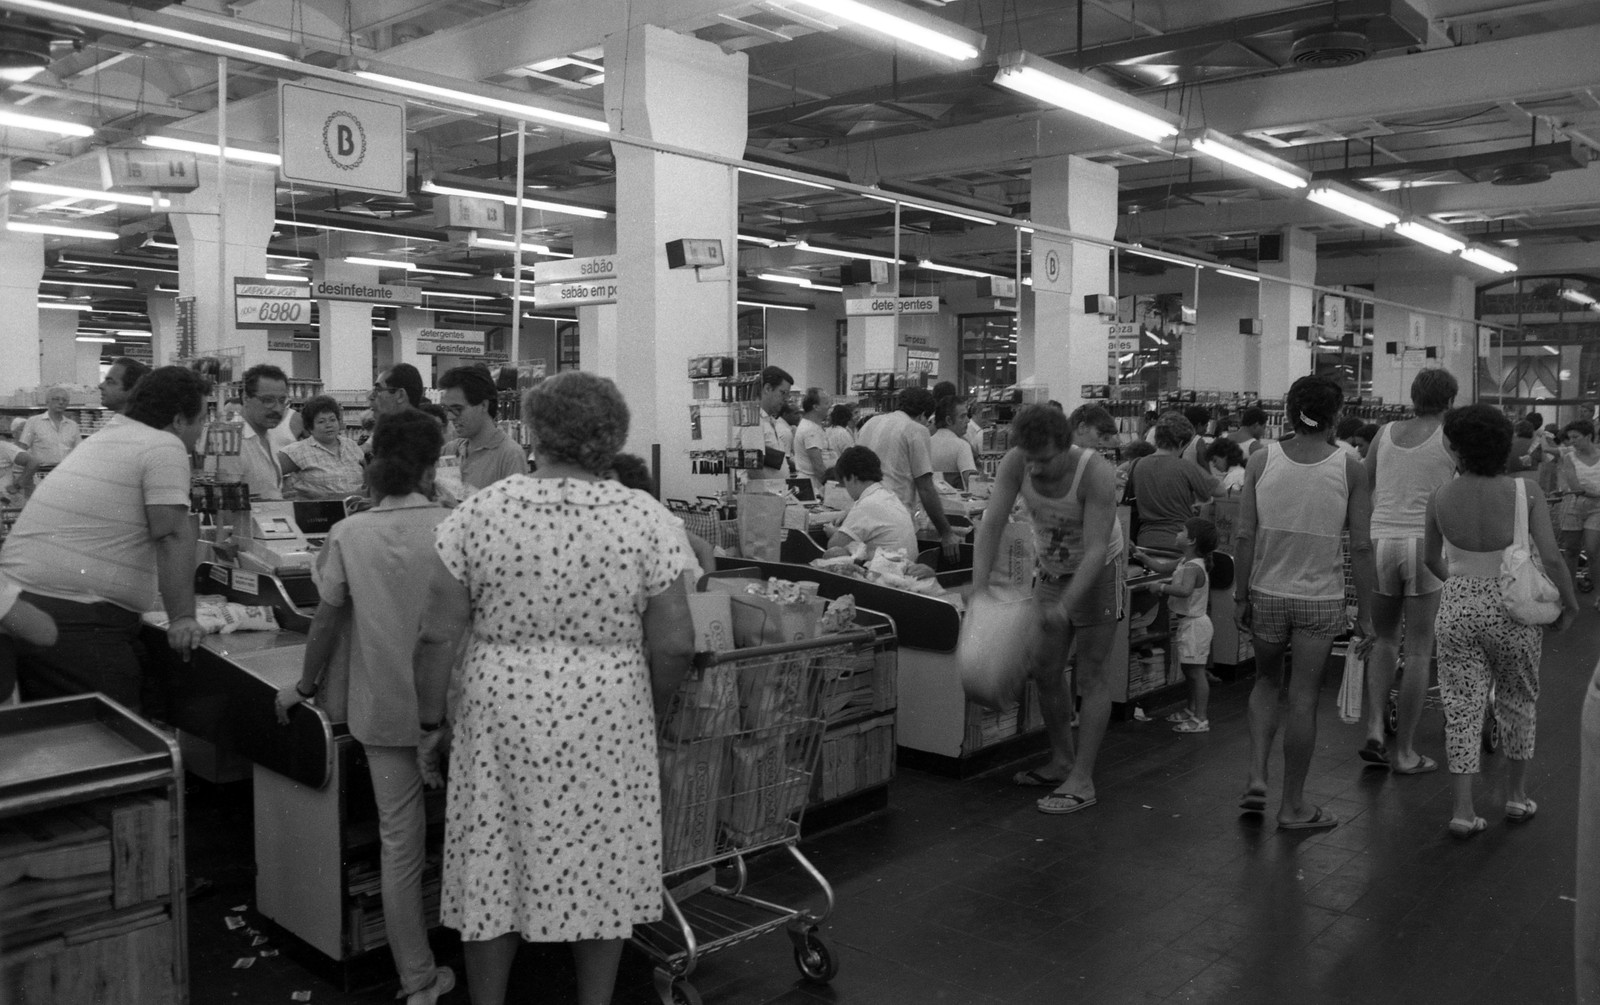 Movimento no supermercado e muita fiscalização por parte dos clientes — Foto: José Doval / Agência O Globo